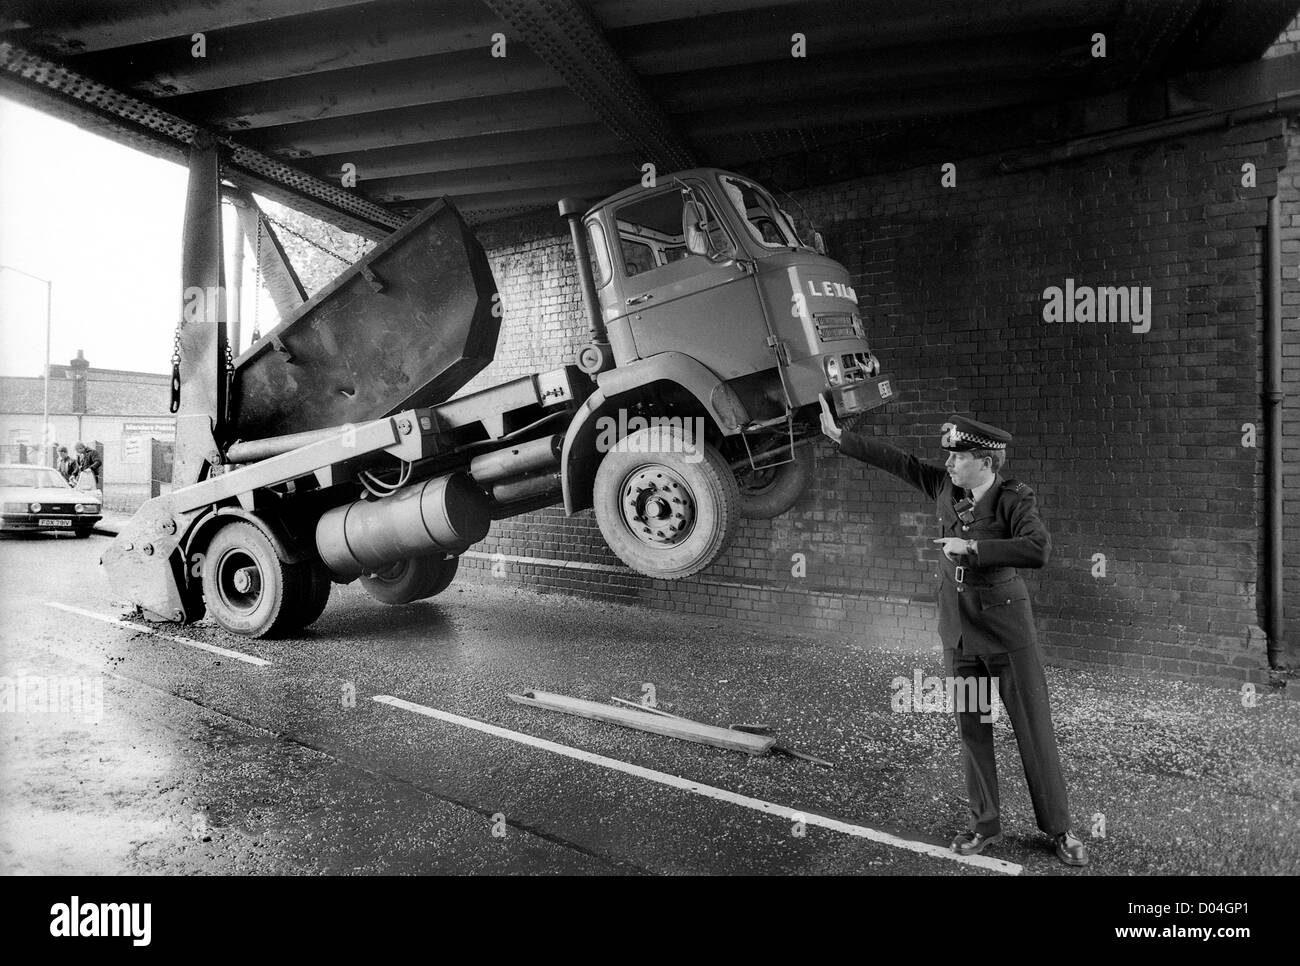 Ein unter einer Brücke eingekeilter lastkraftwagen scheint von der Hand eines Polizisten hochgehalten zu werden, als er den Verkehr 1985 kontrolliert. Großbritannien 1980er Straße blockiert Unfall Polizeibeamter Verkehr Kollision LKW stecken niedrige Brücke Höhe Stockfoto